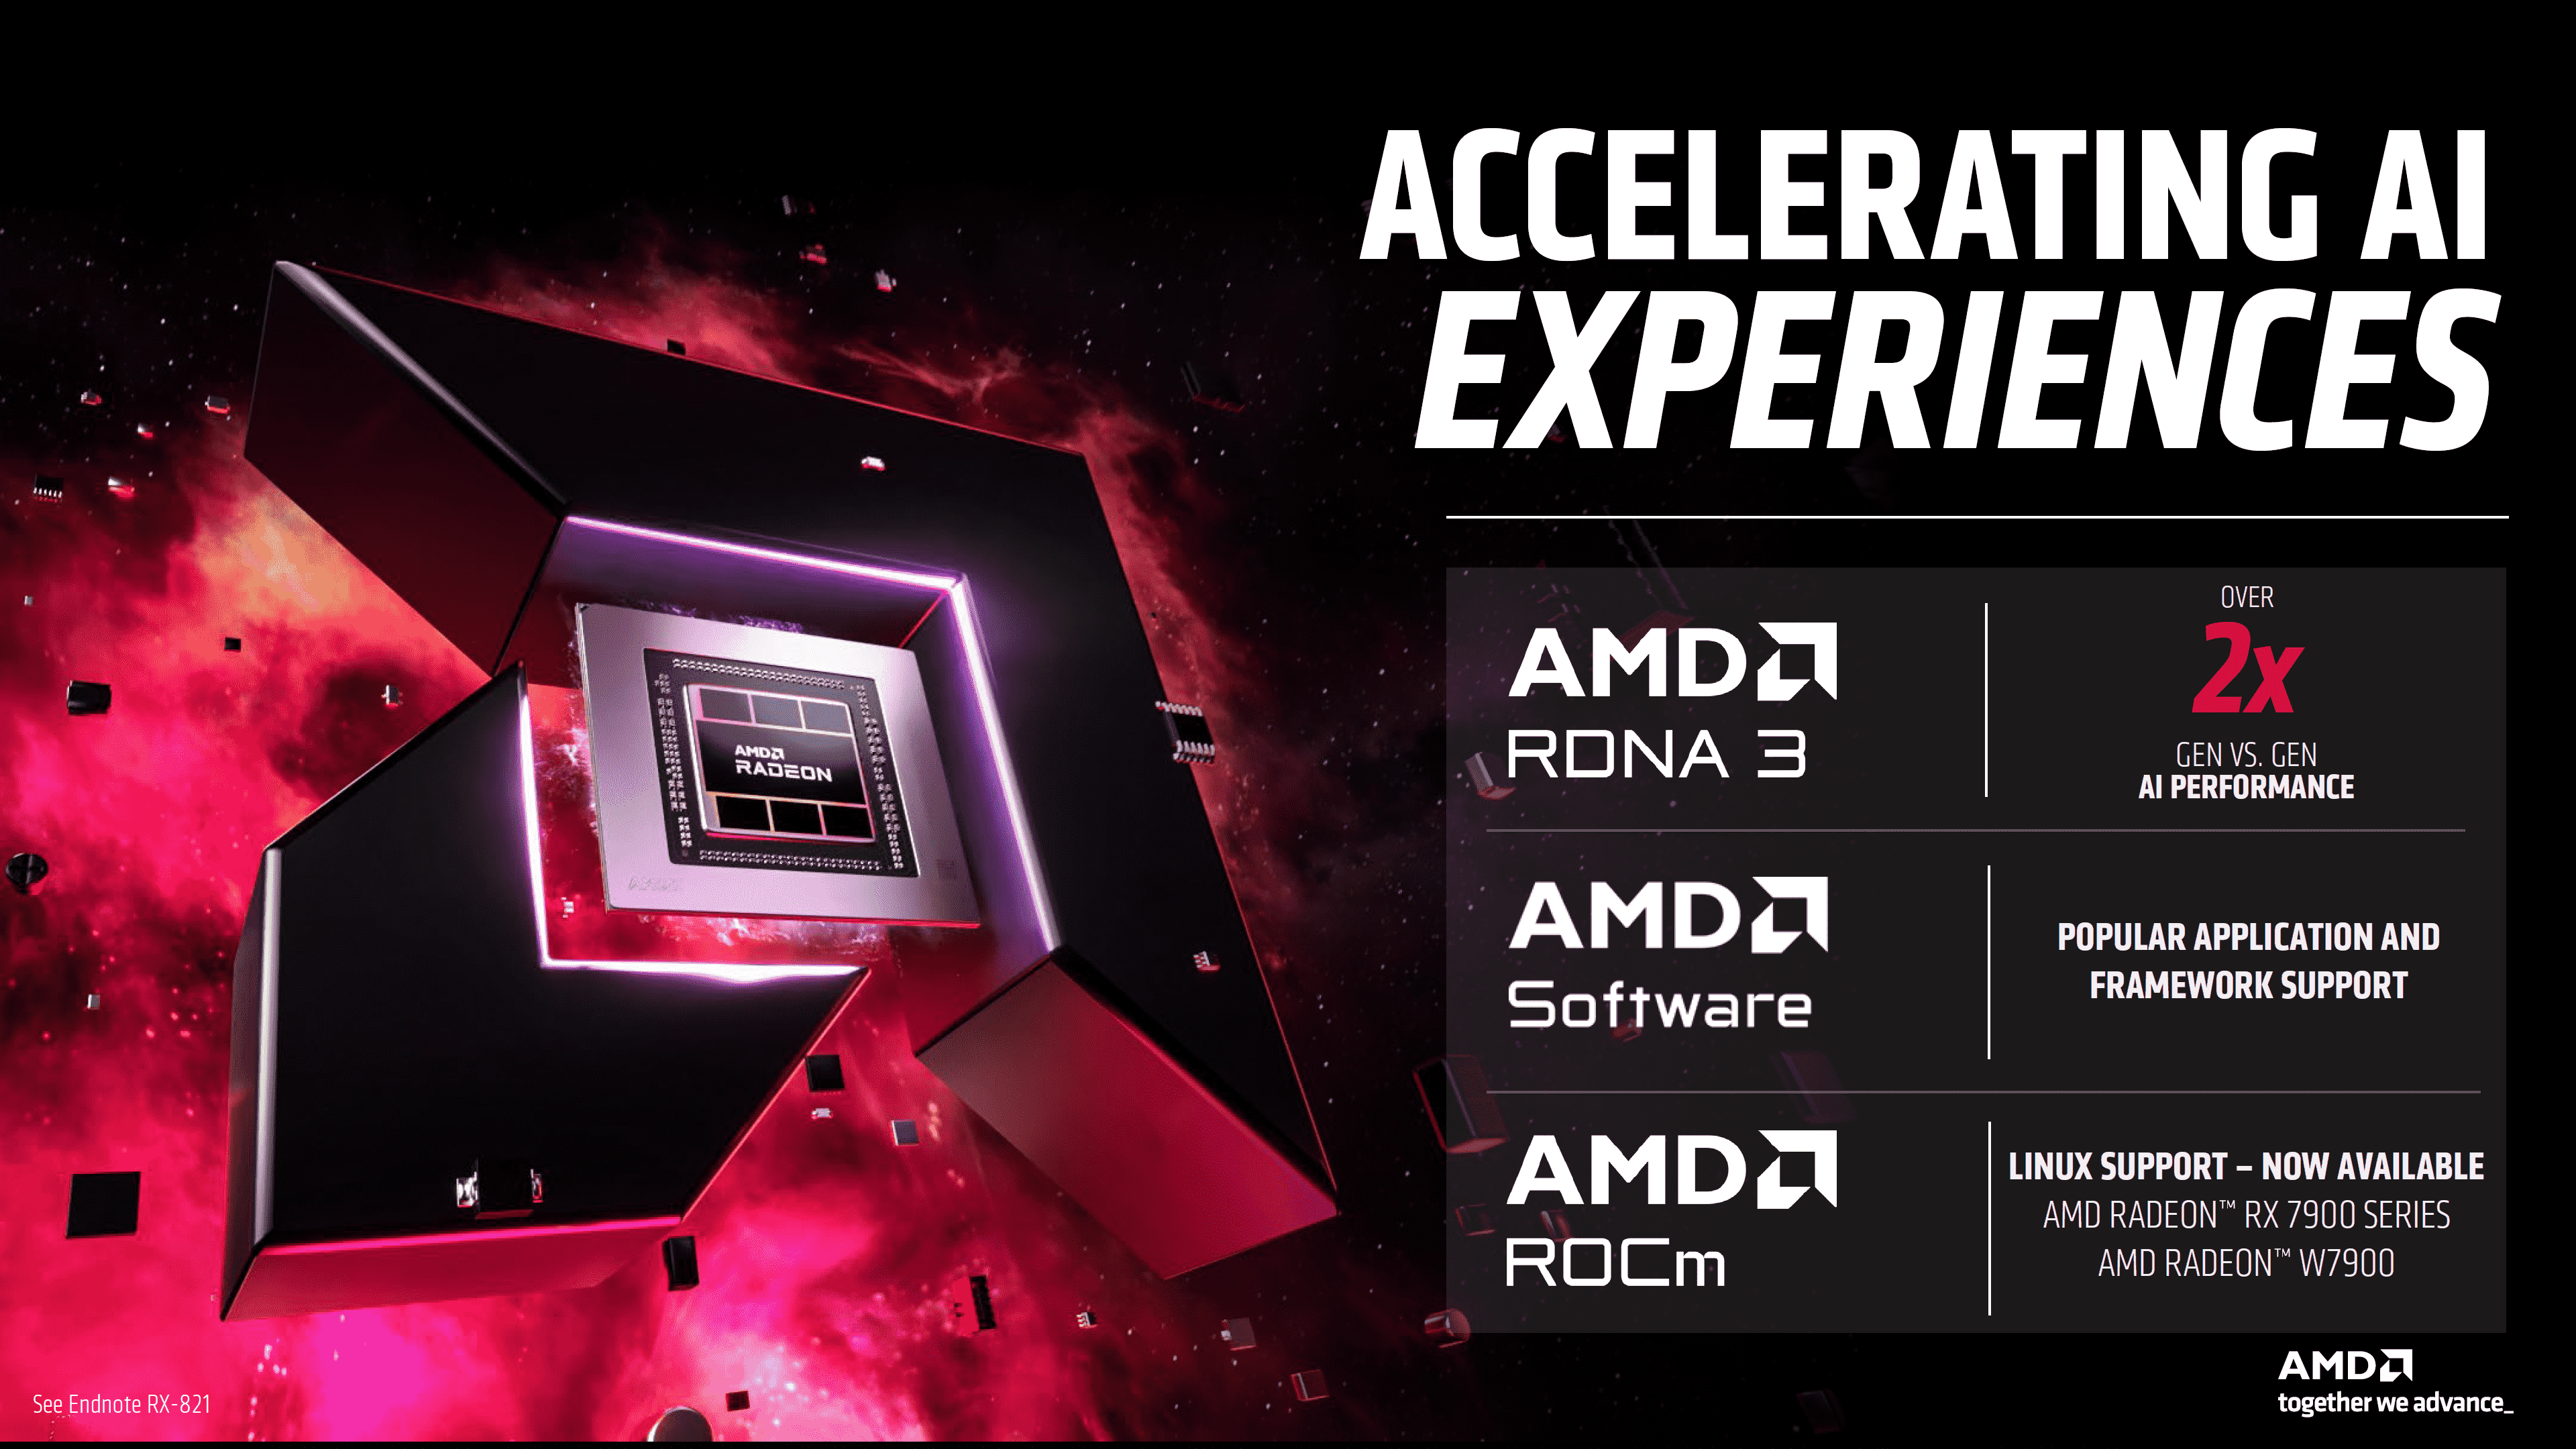 AMD, RDNA 3 GPU'ların ve XDNA NPU'nun Yapay Zeka Yeteneklerinden Bahsediyor: Radeon RX 7800 XTX Ryzen 7 8700G'den 8 Kat Daha Hızlı 3